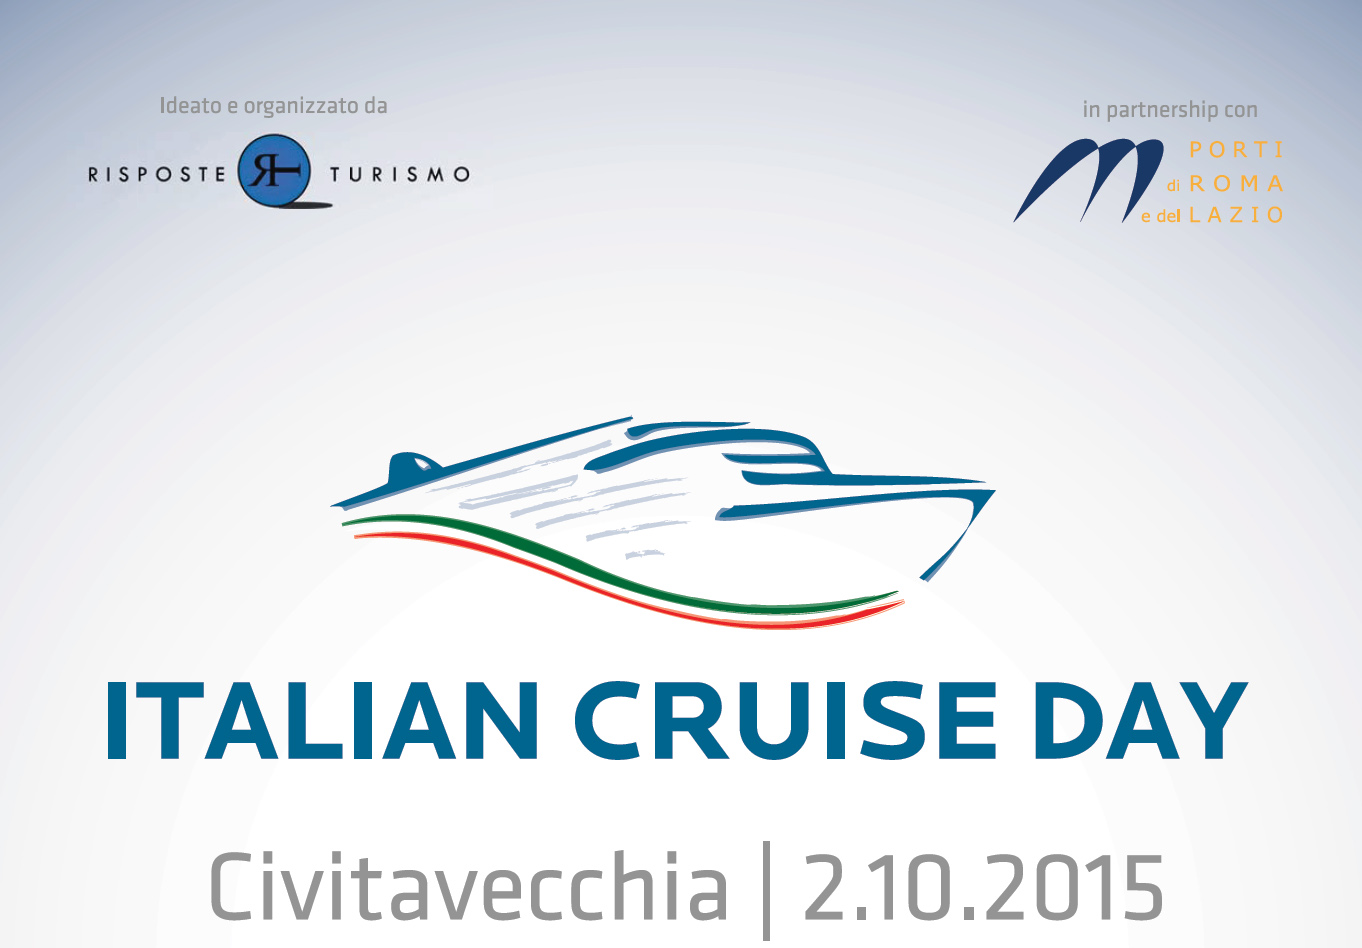 El Italian Cruise Day es el foro de la industria de cruceros italiana. Este año tendrá lugar en Civitavecchia